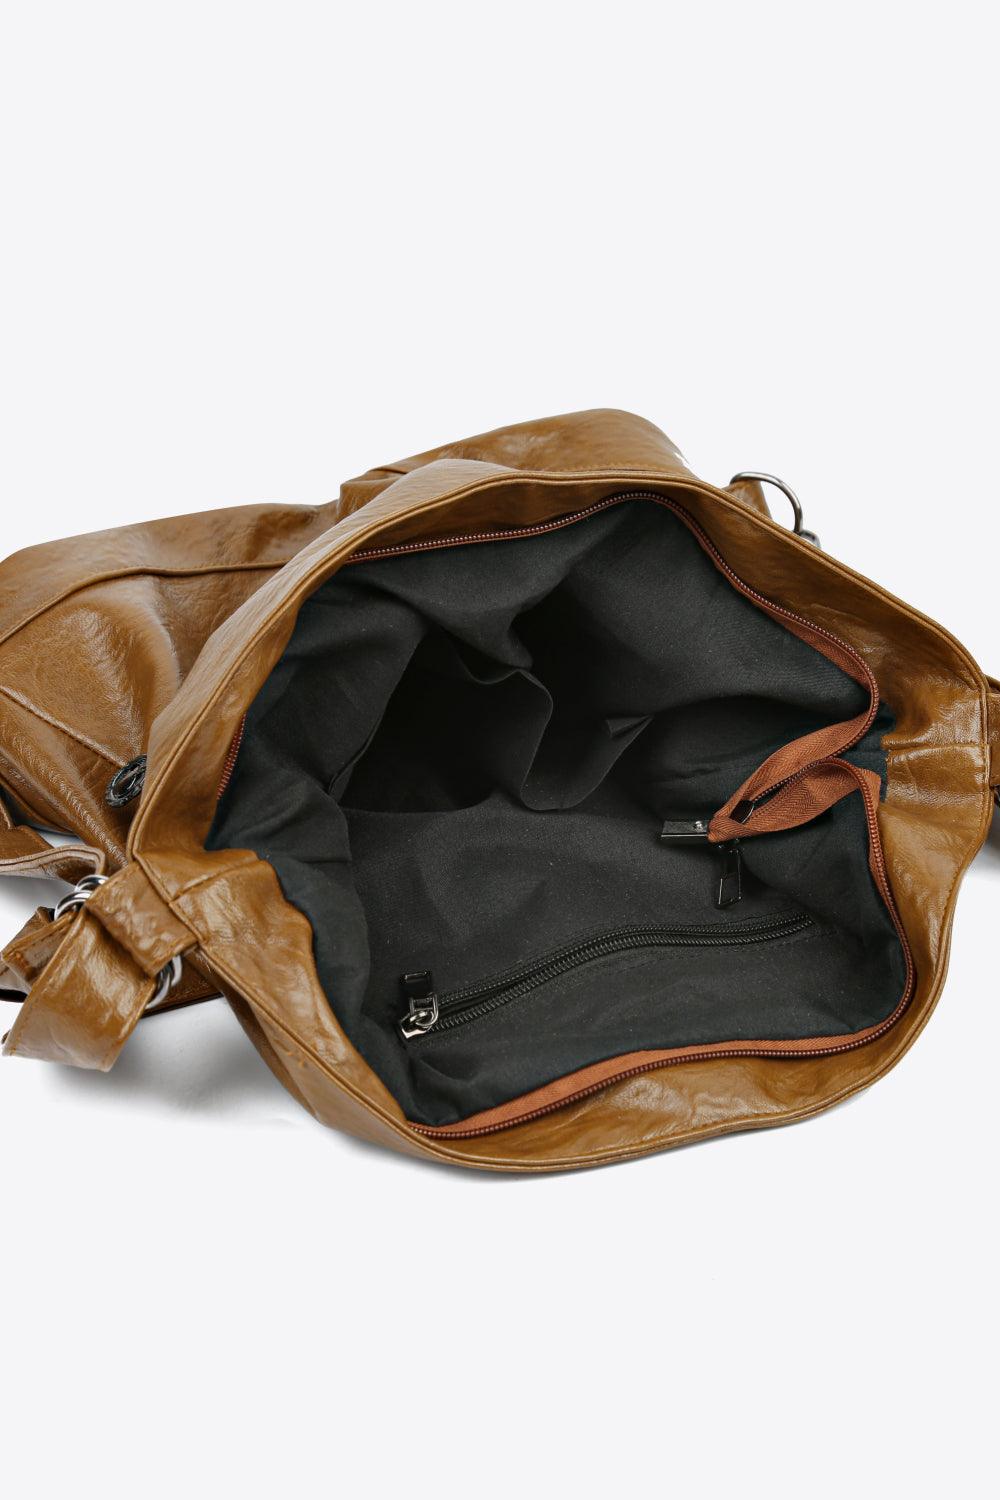 Leather Shoulder Bag - Olive Ave